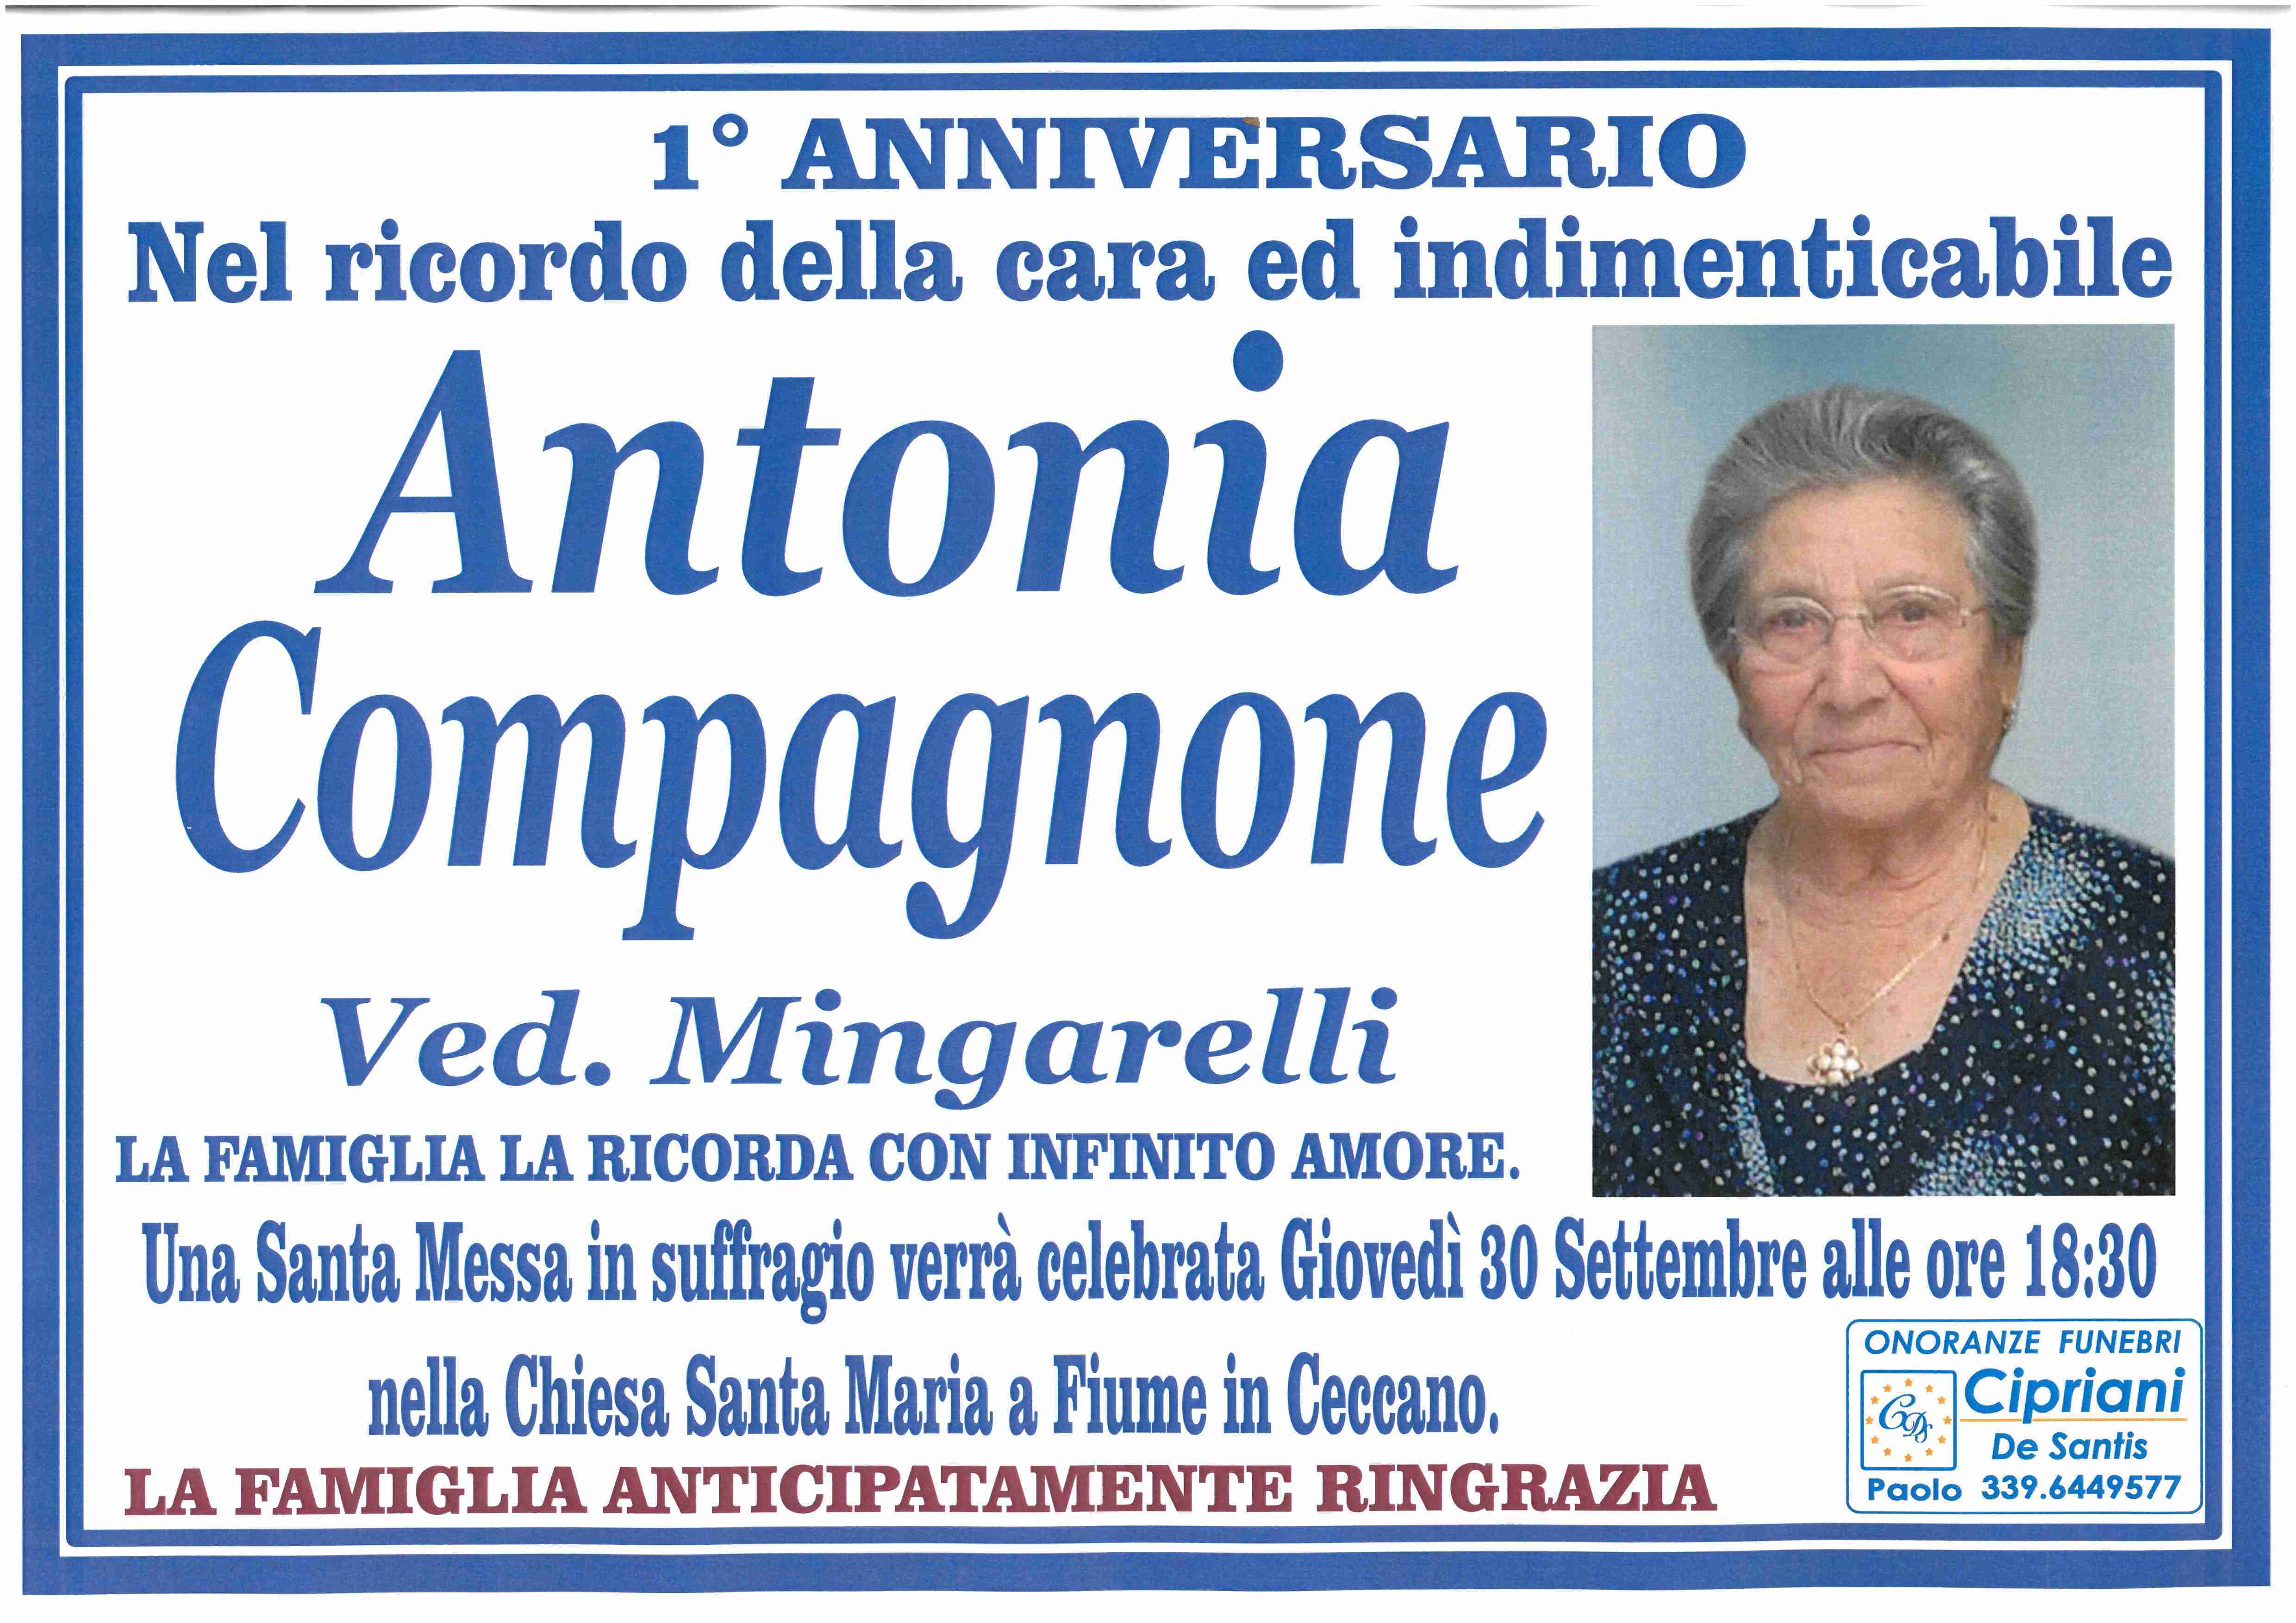 Antonia Compagnone